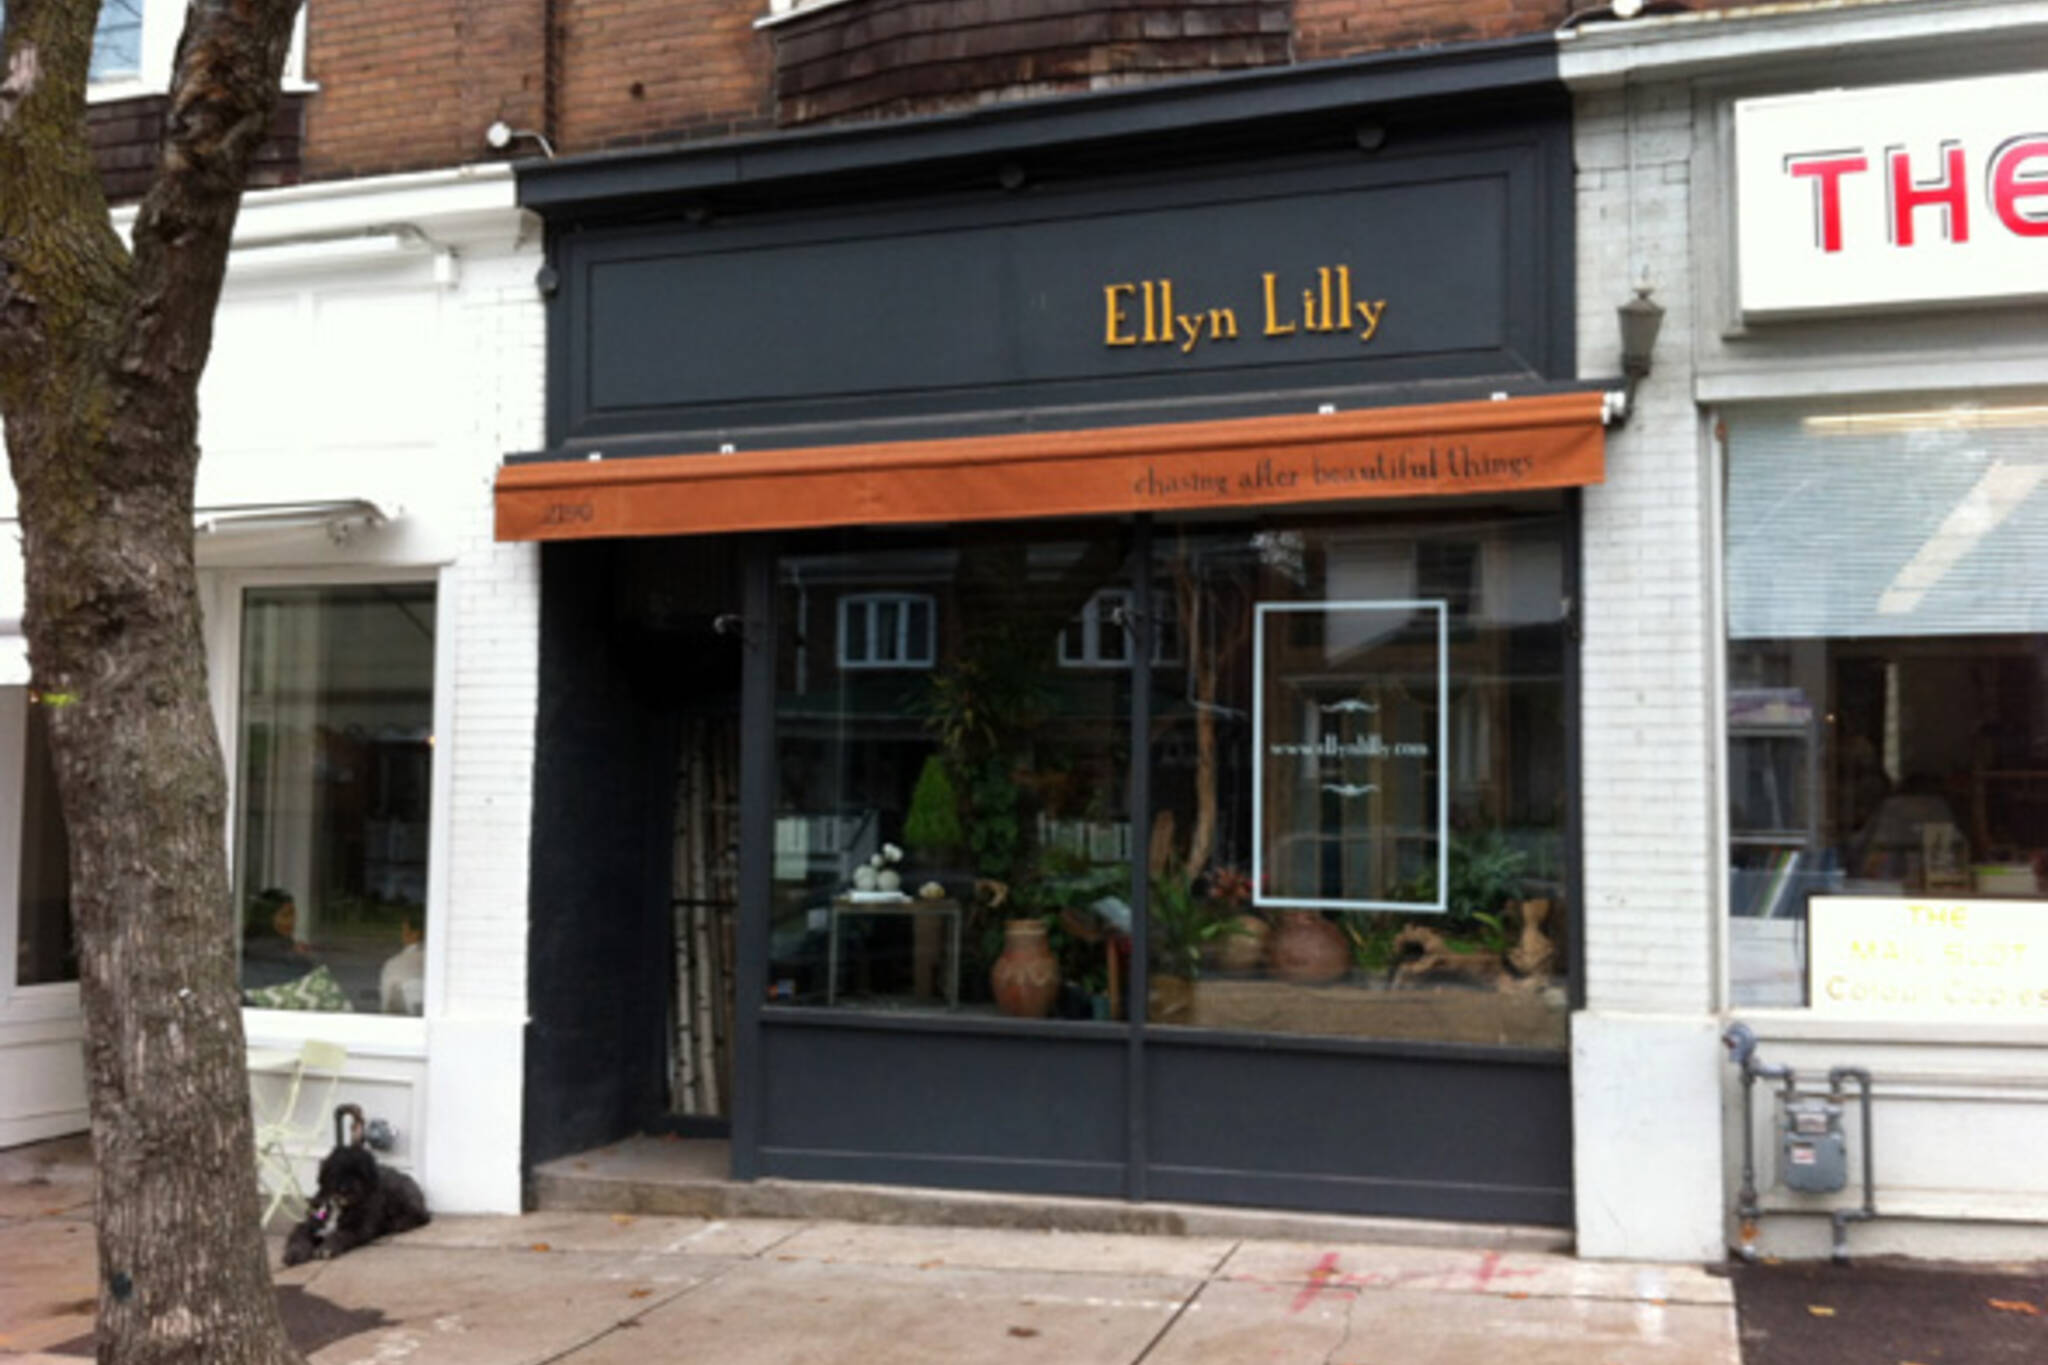 20121113-ellyn-lilly.jpg